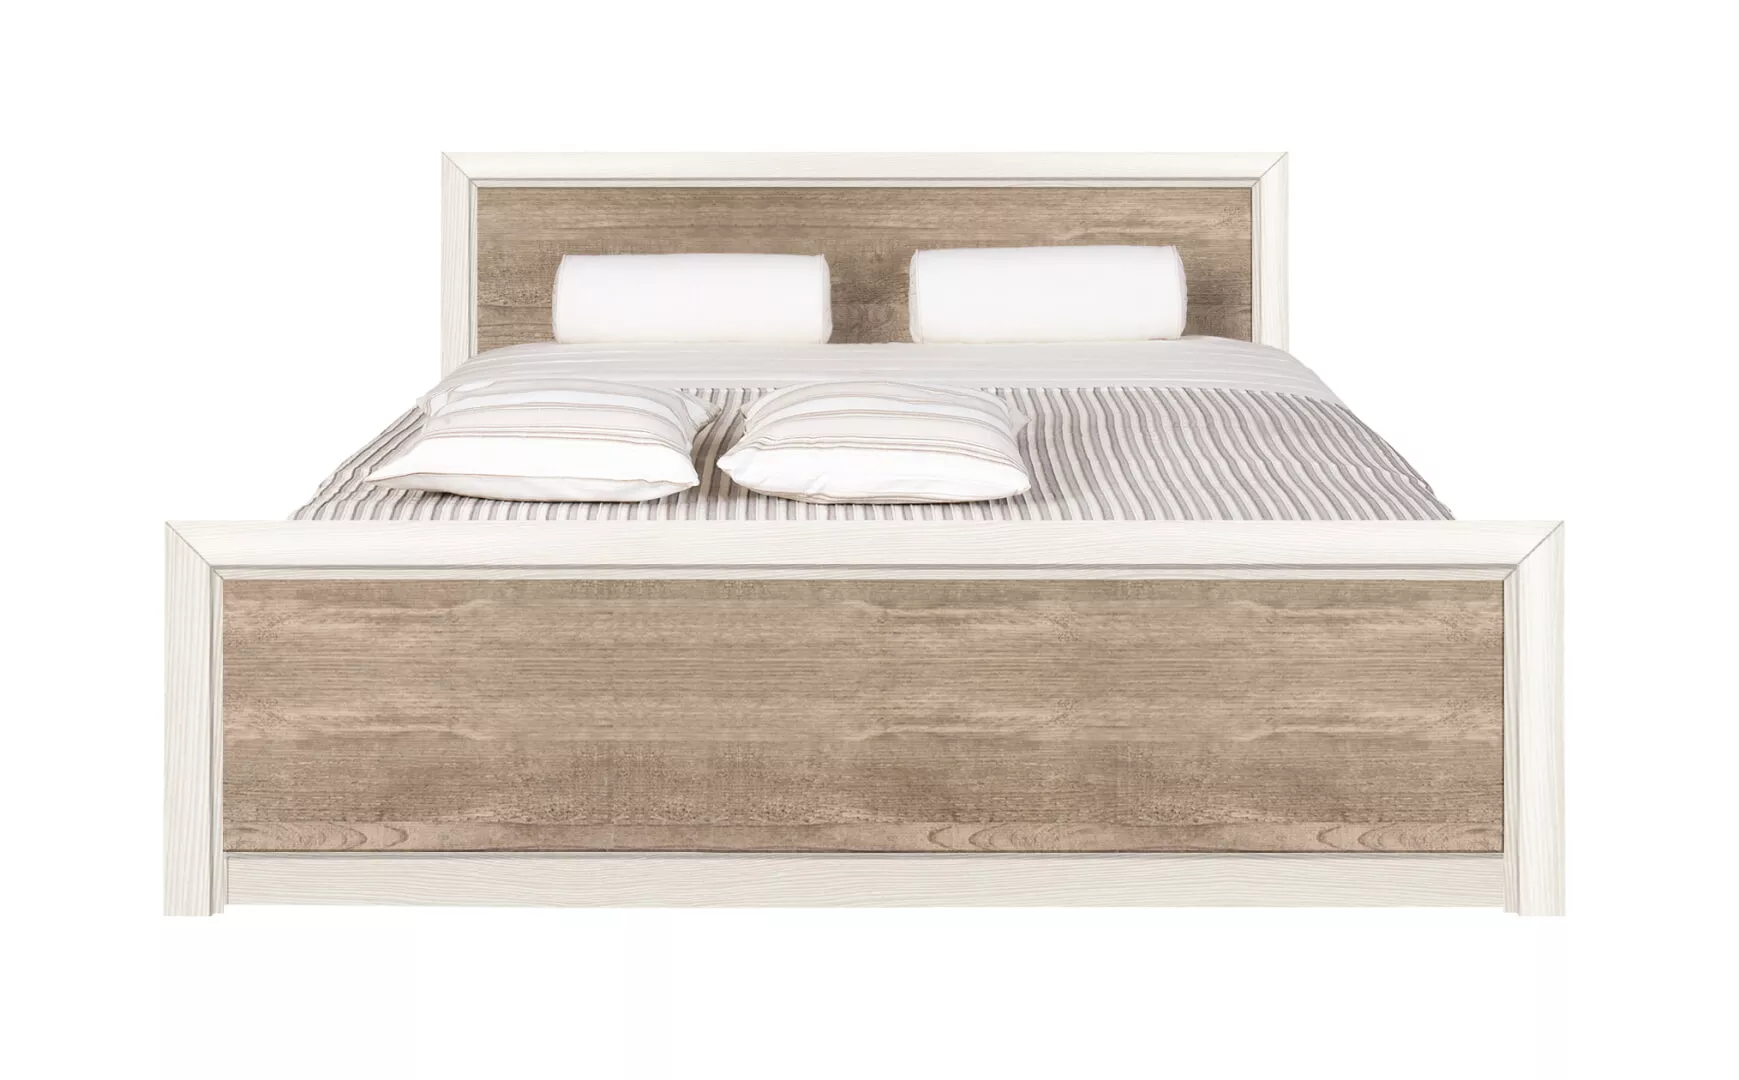 Спальня | Кровати | КОЕН Кровать LOZ 160х200 с подъемным механизмом Мебель ☆ IDEA в Севастополе| BRW, Брест anons